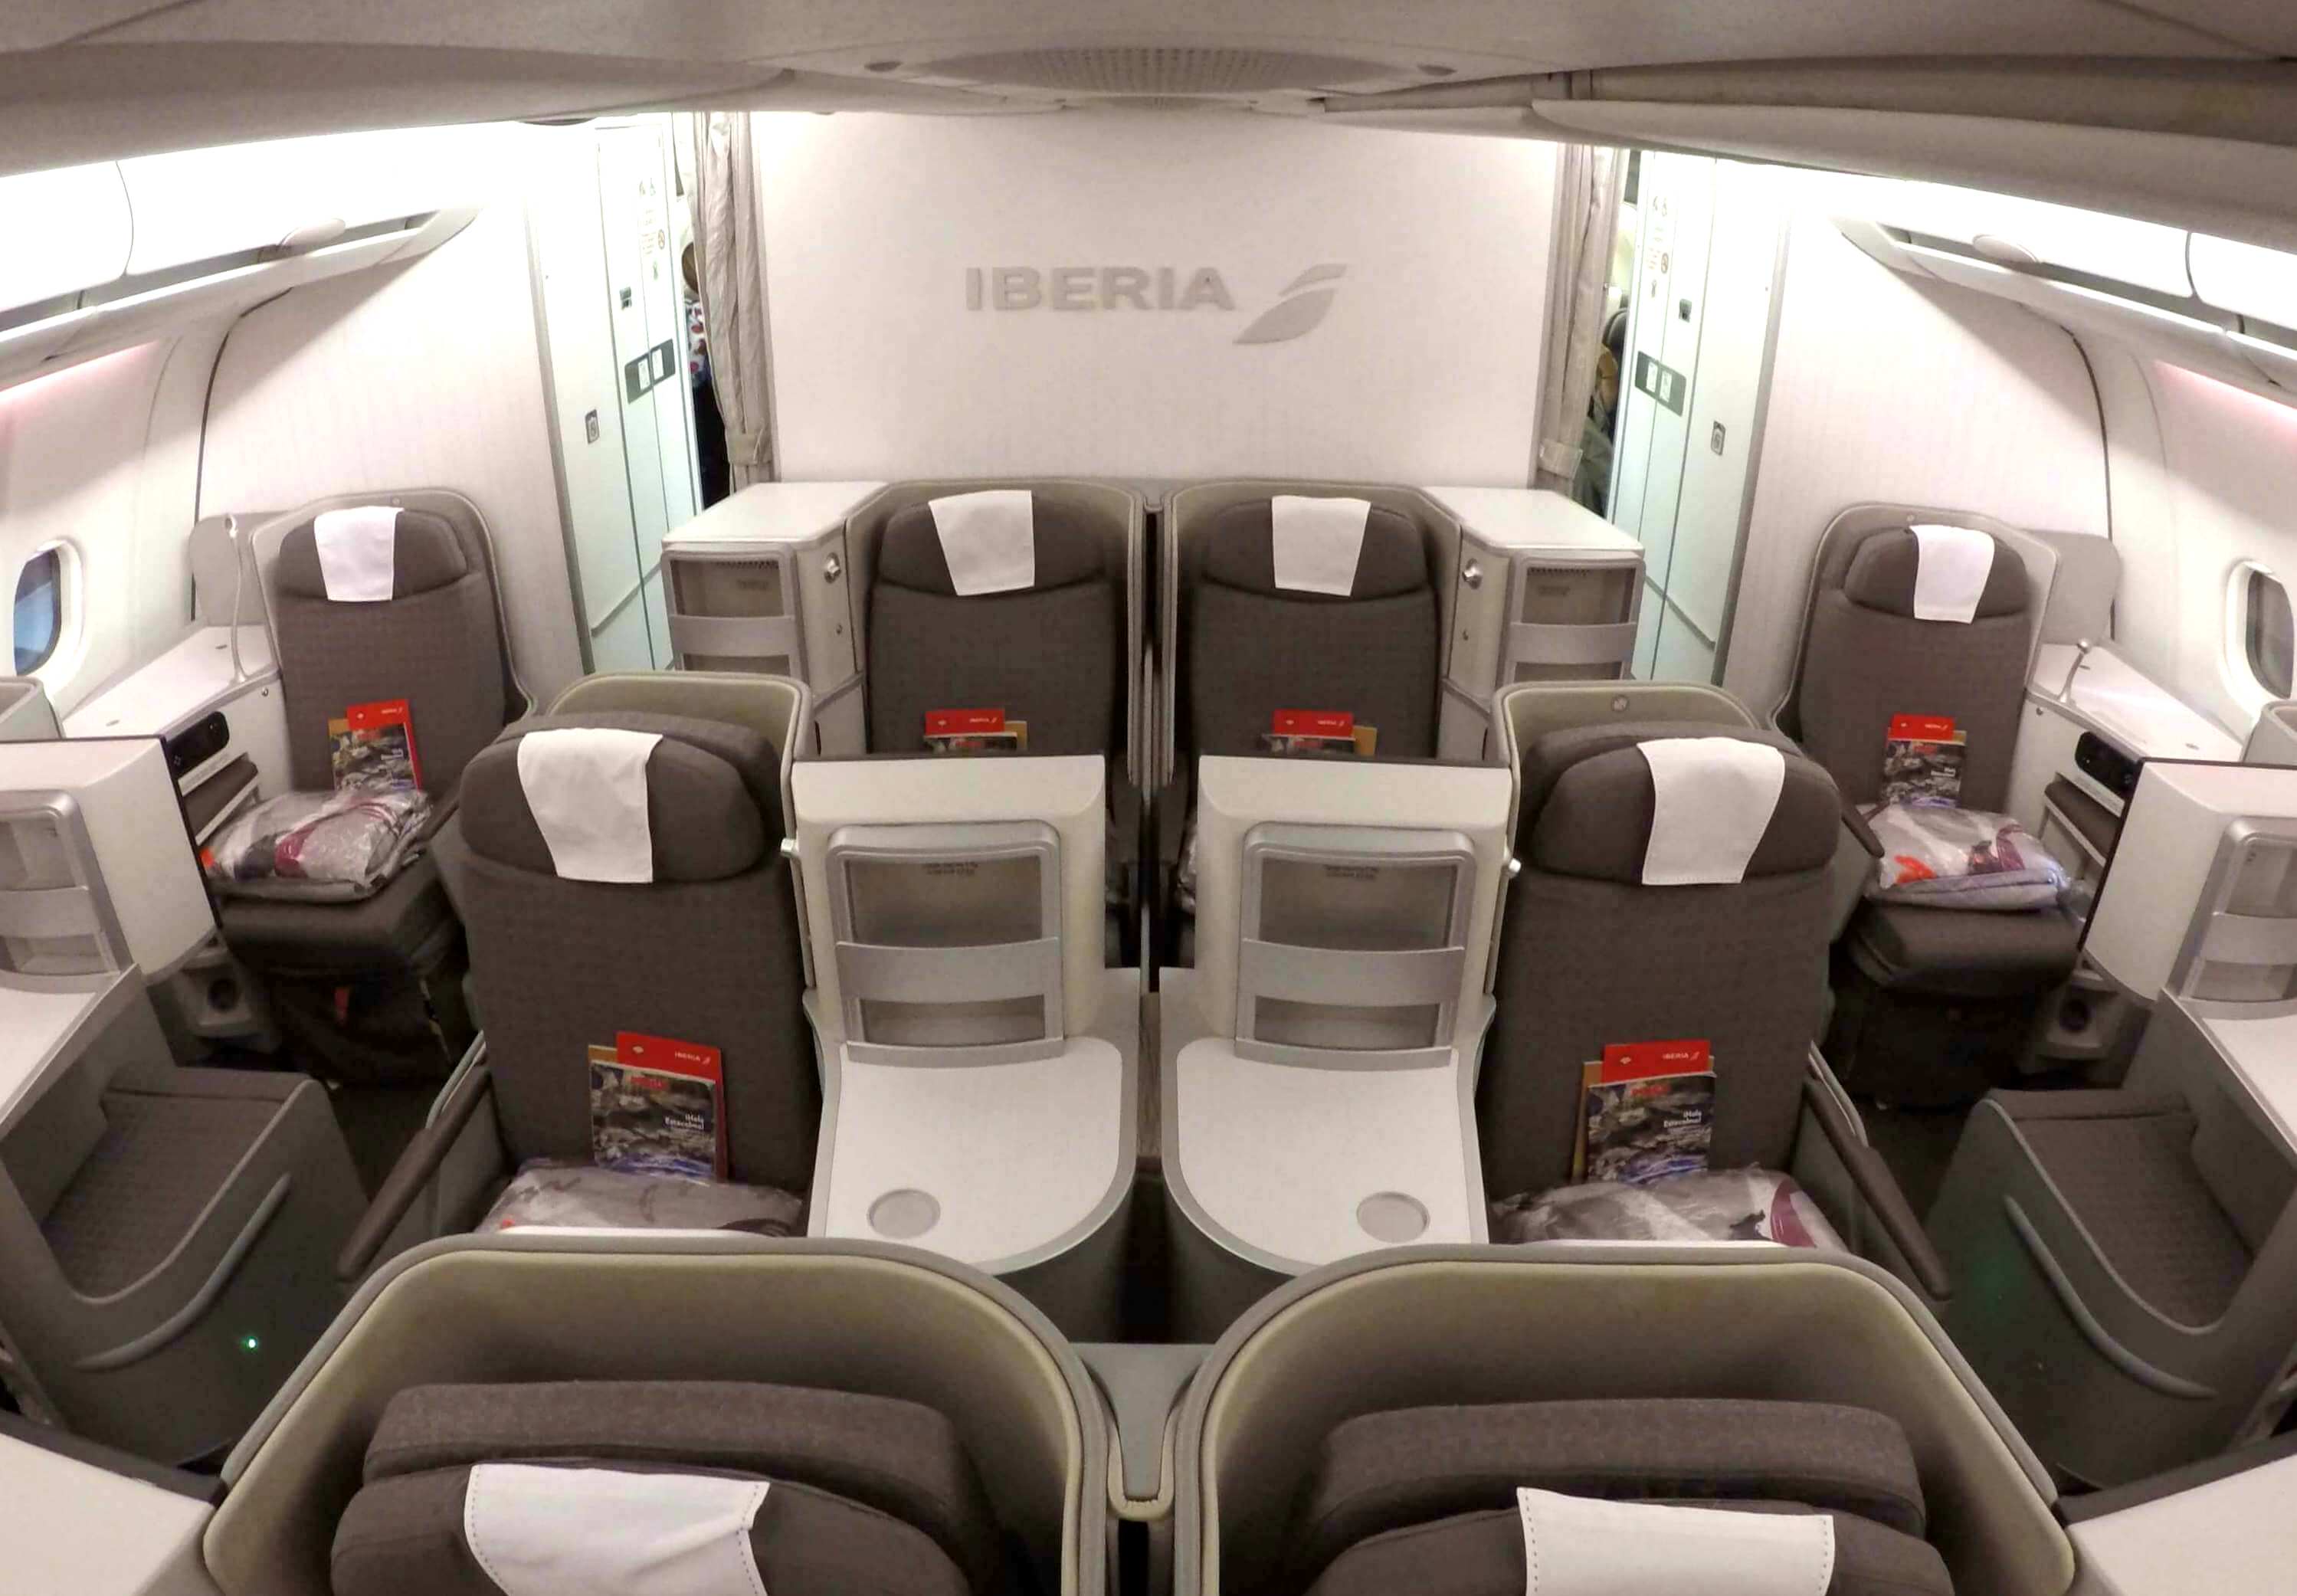 Cabina de business class de Iberia (foto de reporte anterior)